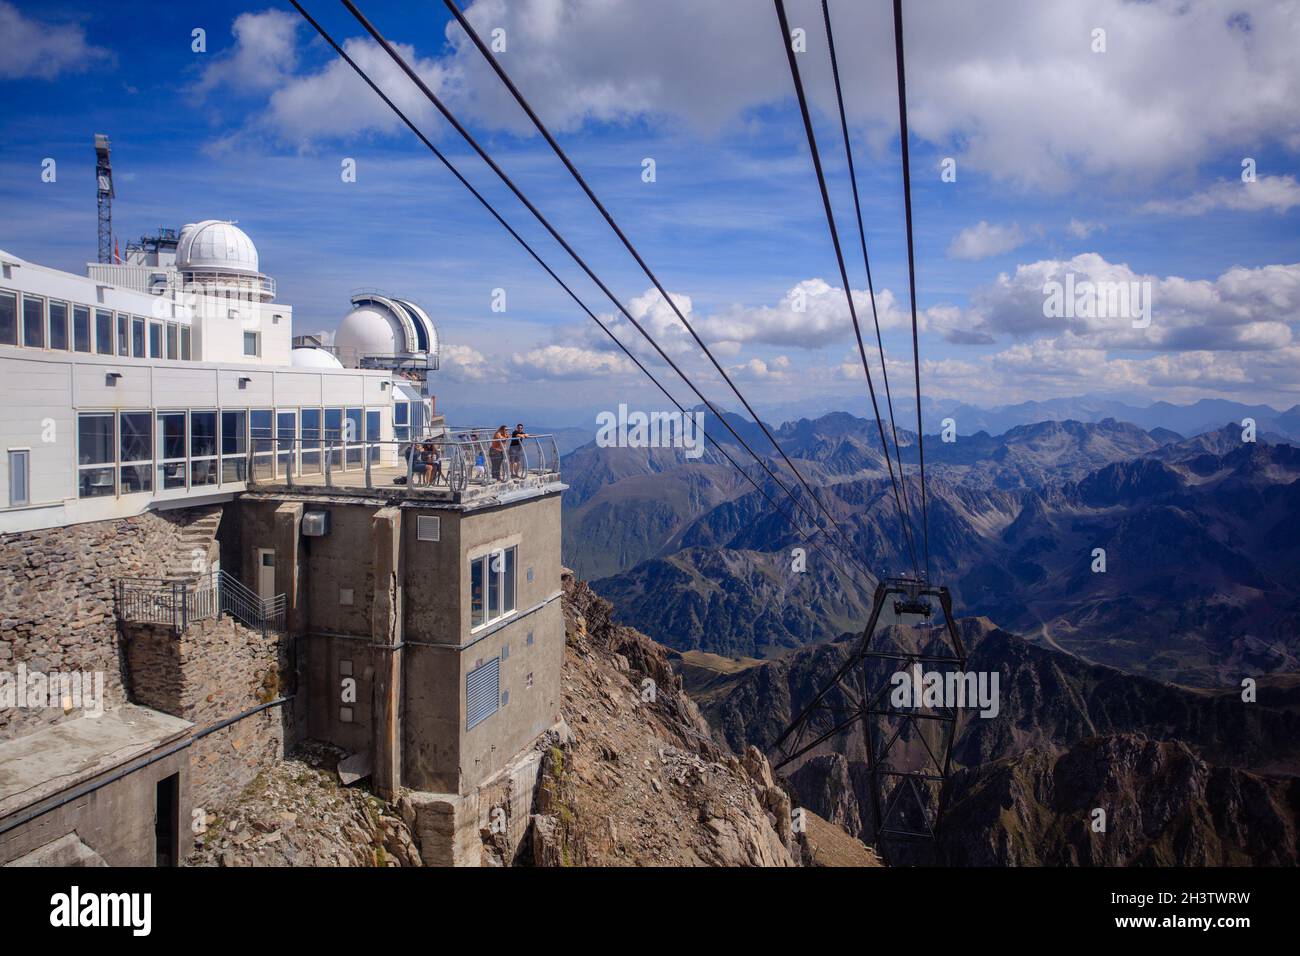 Pic du midi est un observatoire dans le Parc National des Pyrénées françaises.Il est accessible en téléphérique de la Mongie à une altitude de 2877 mètres. Banque D'Images